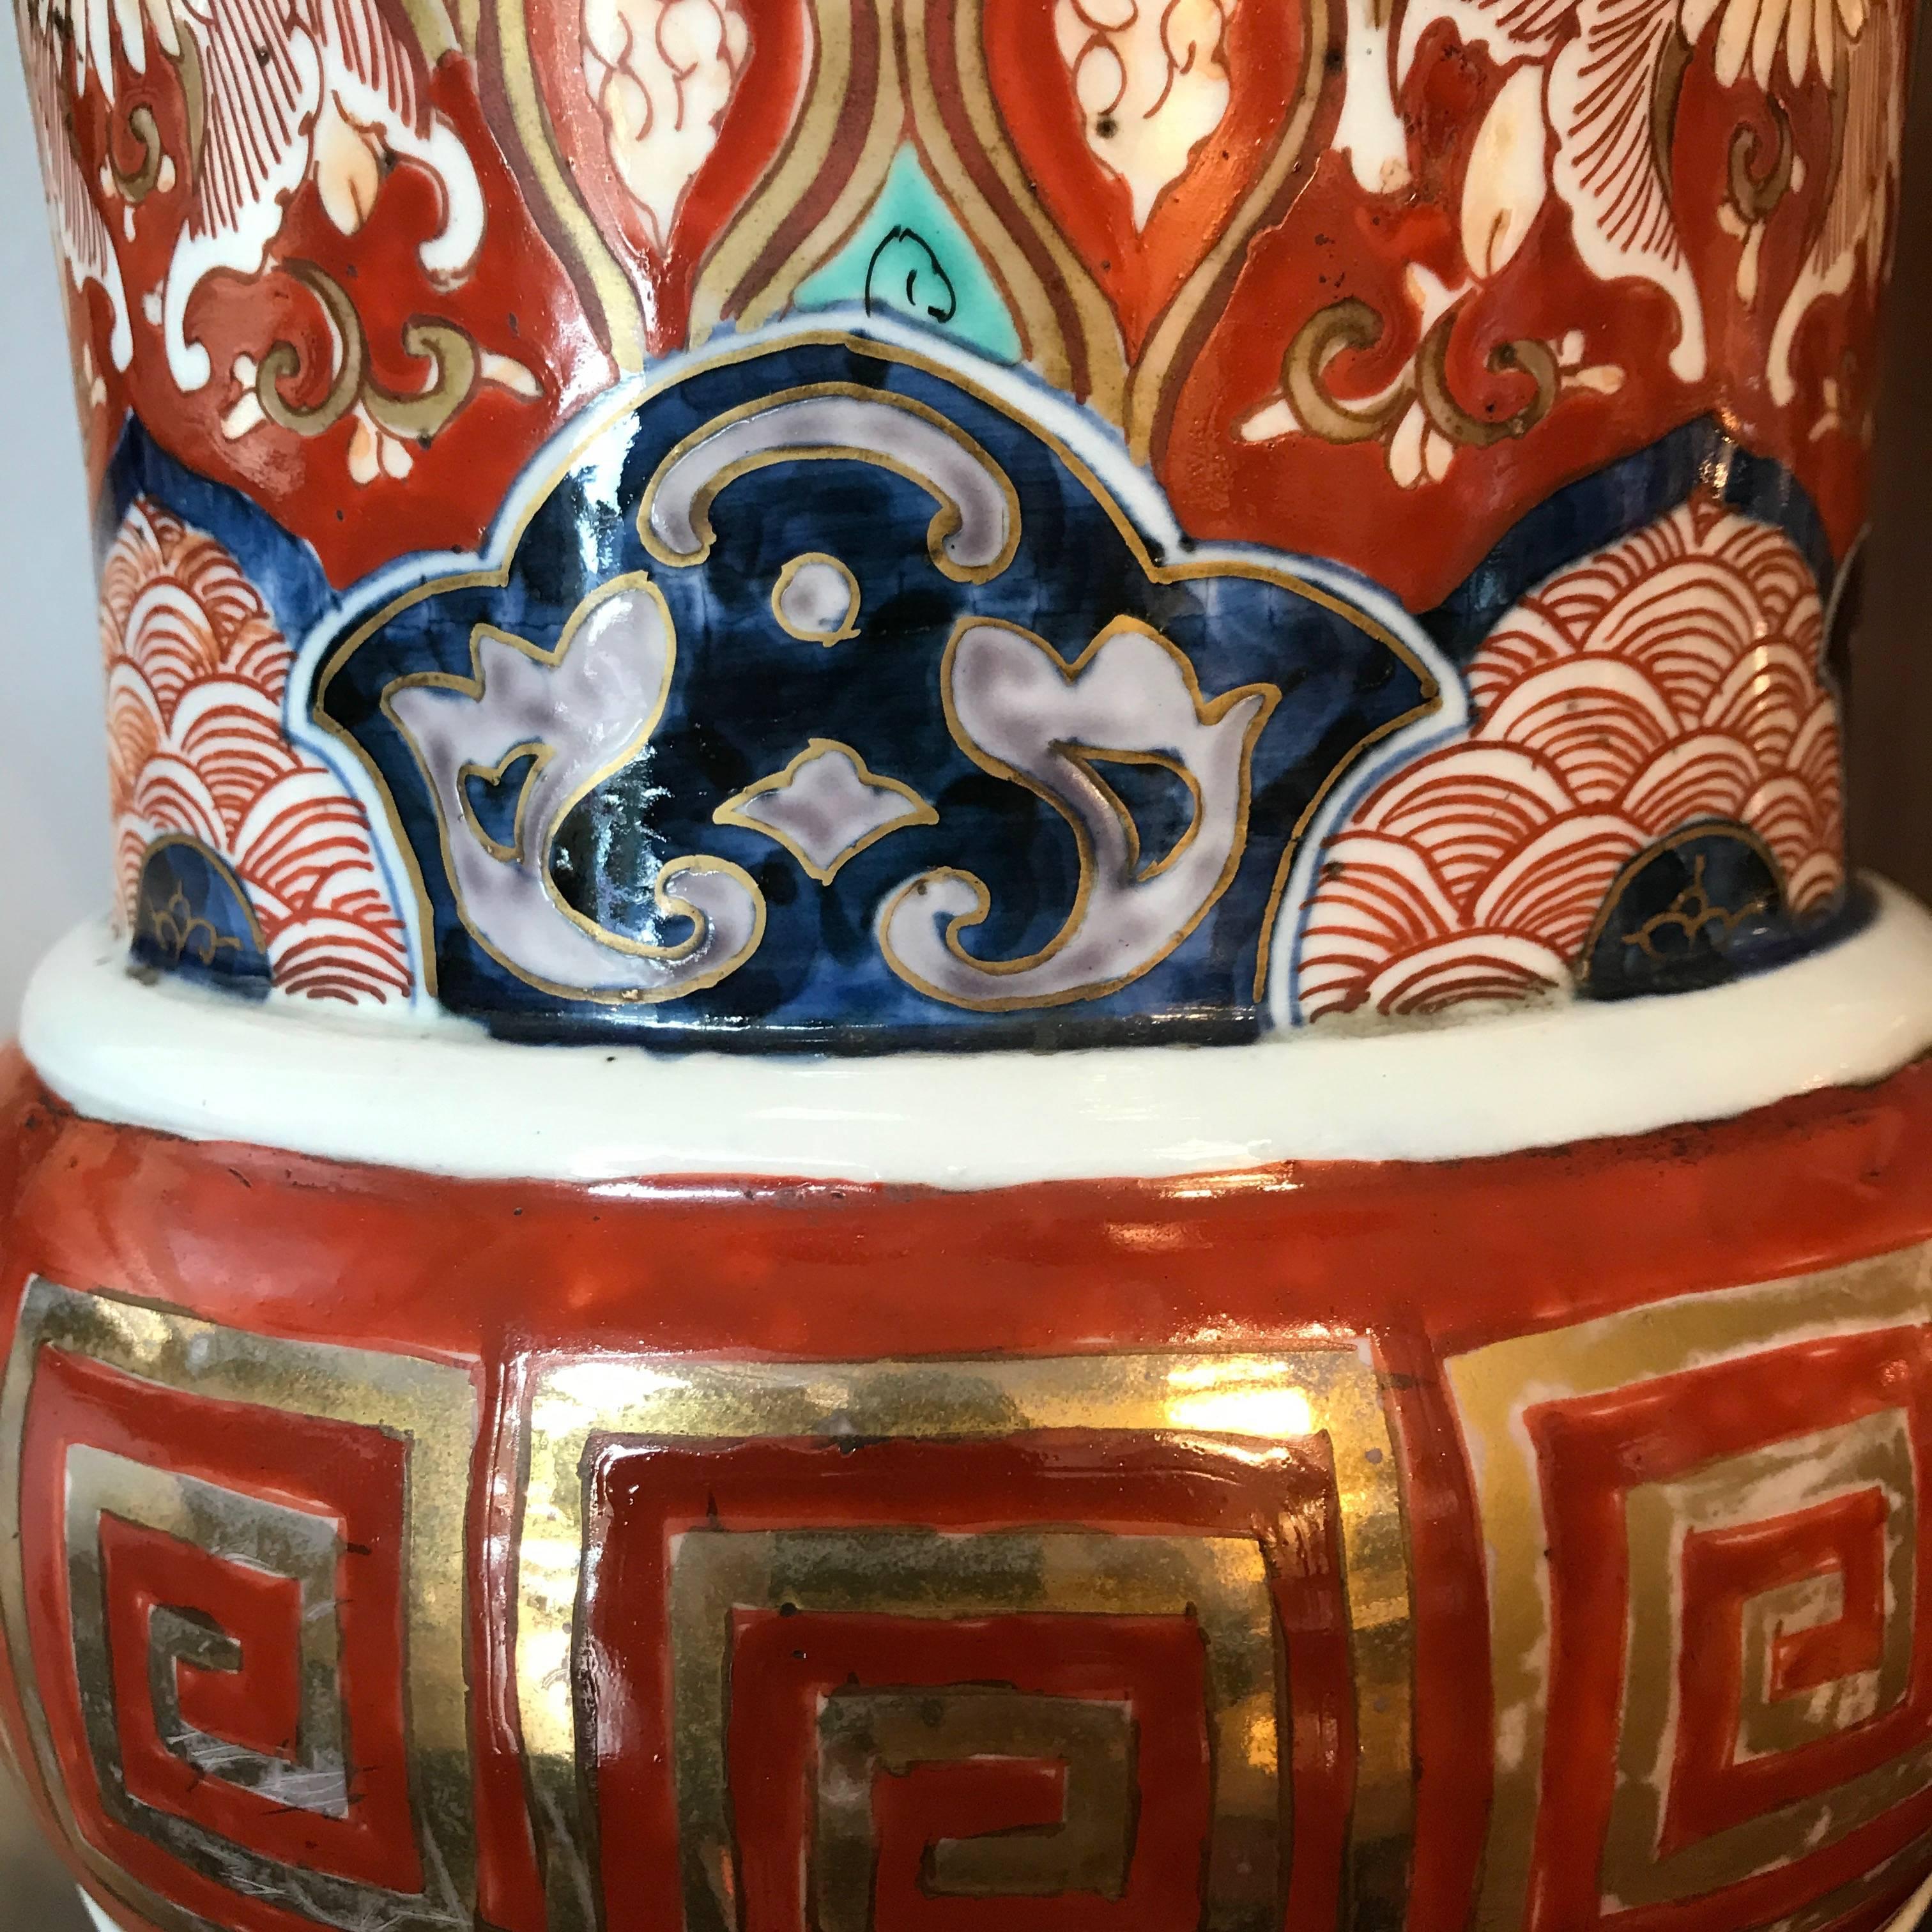 Pair of Large Imari Vases 19th Century Japanese Blue Red White Porcelain Vases 1